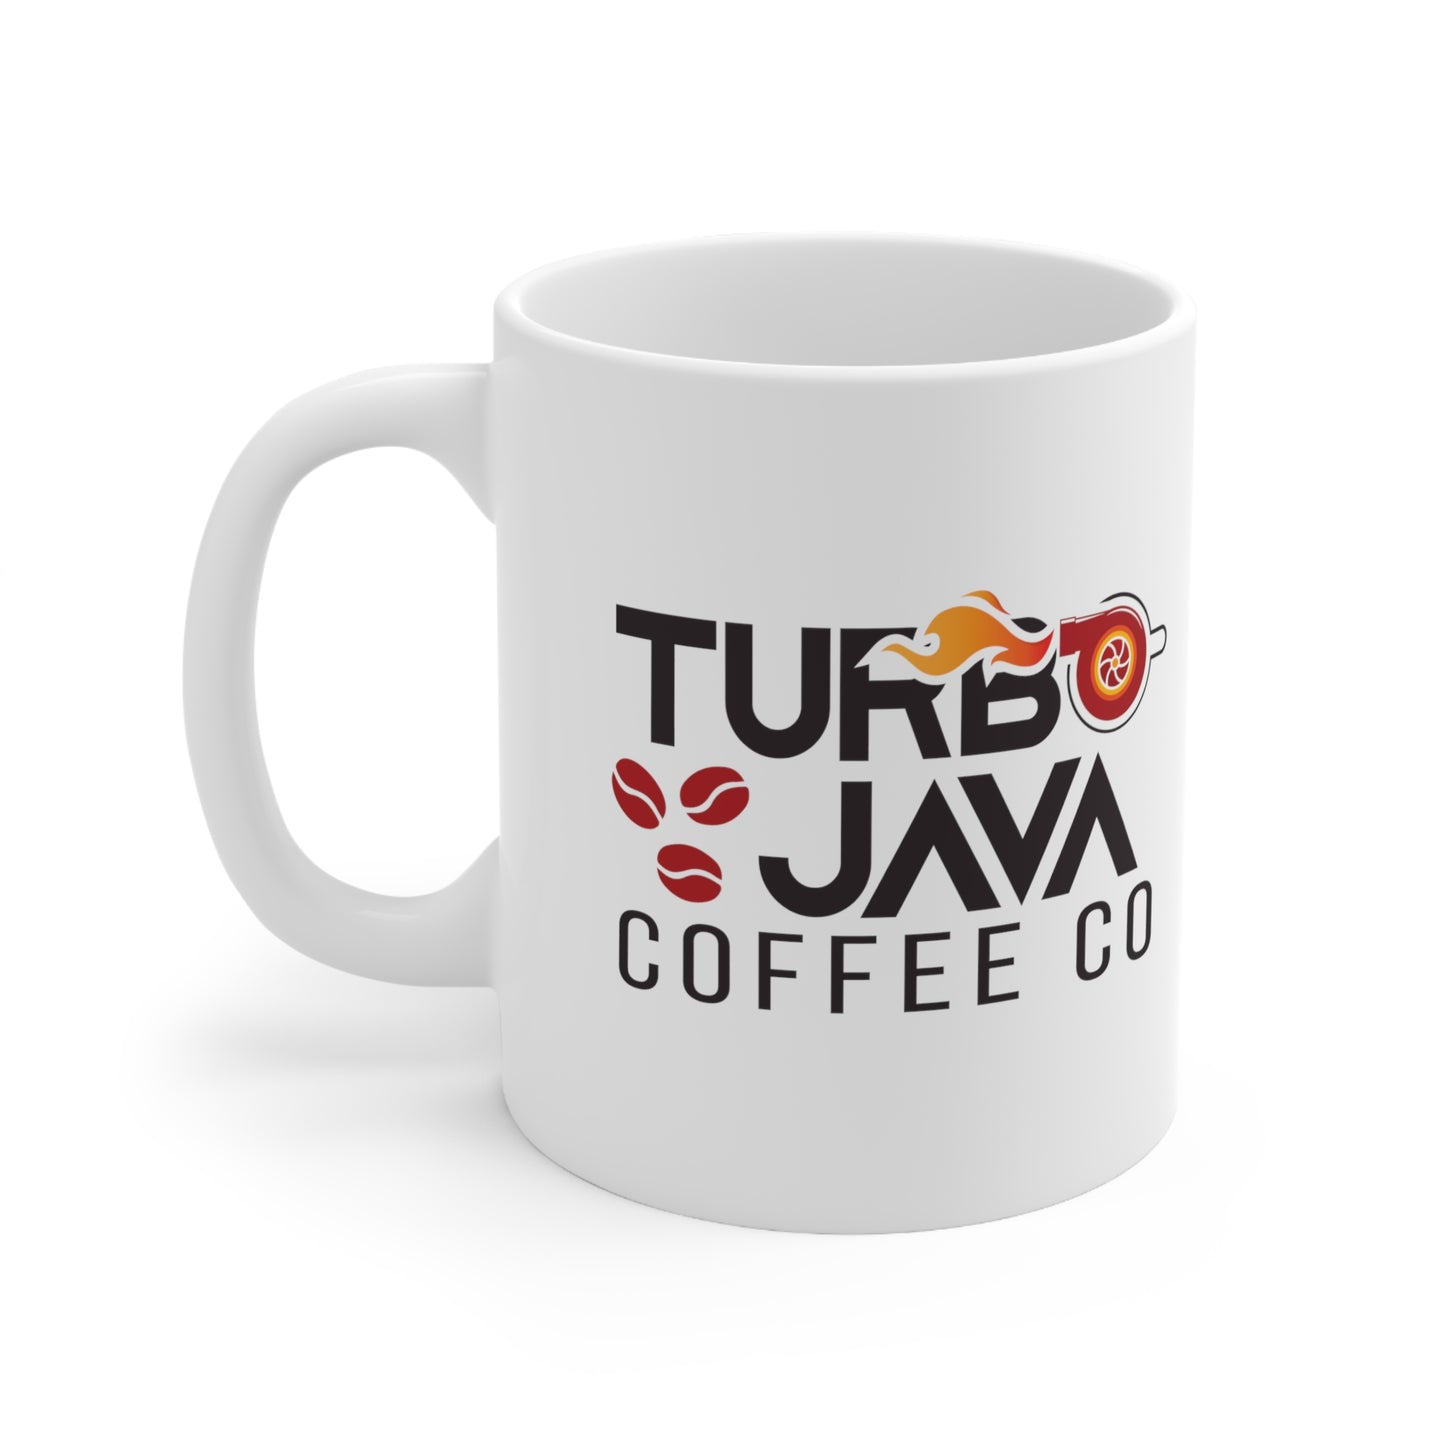 Turbo Java Ceramic Mug - 11 oz. (White)